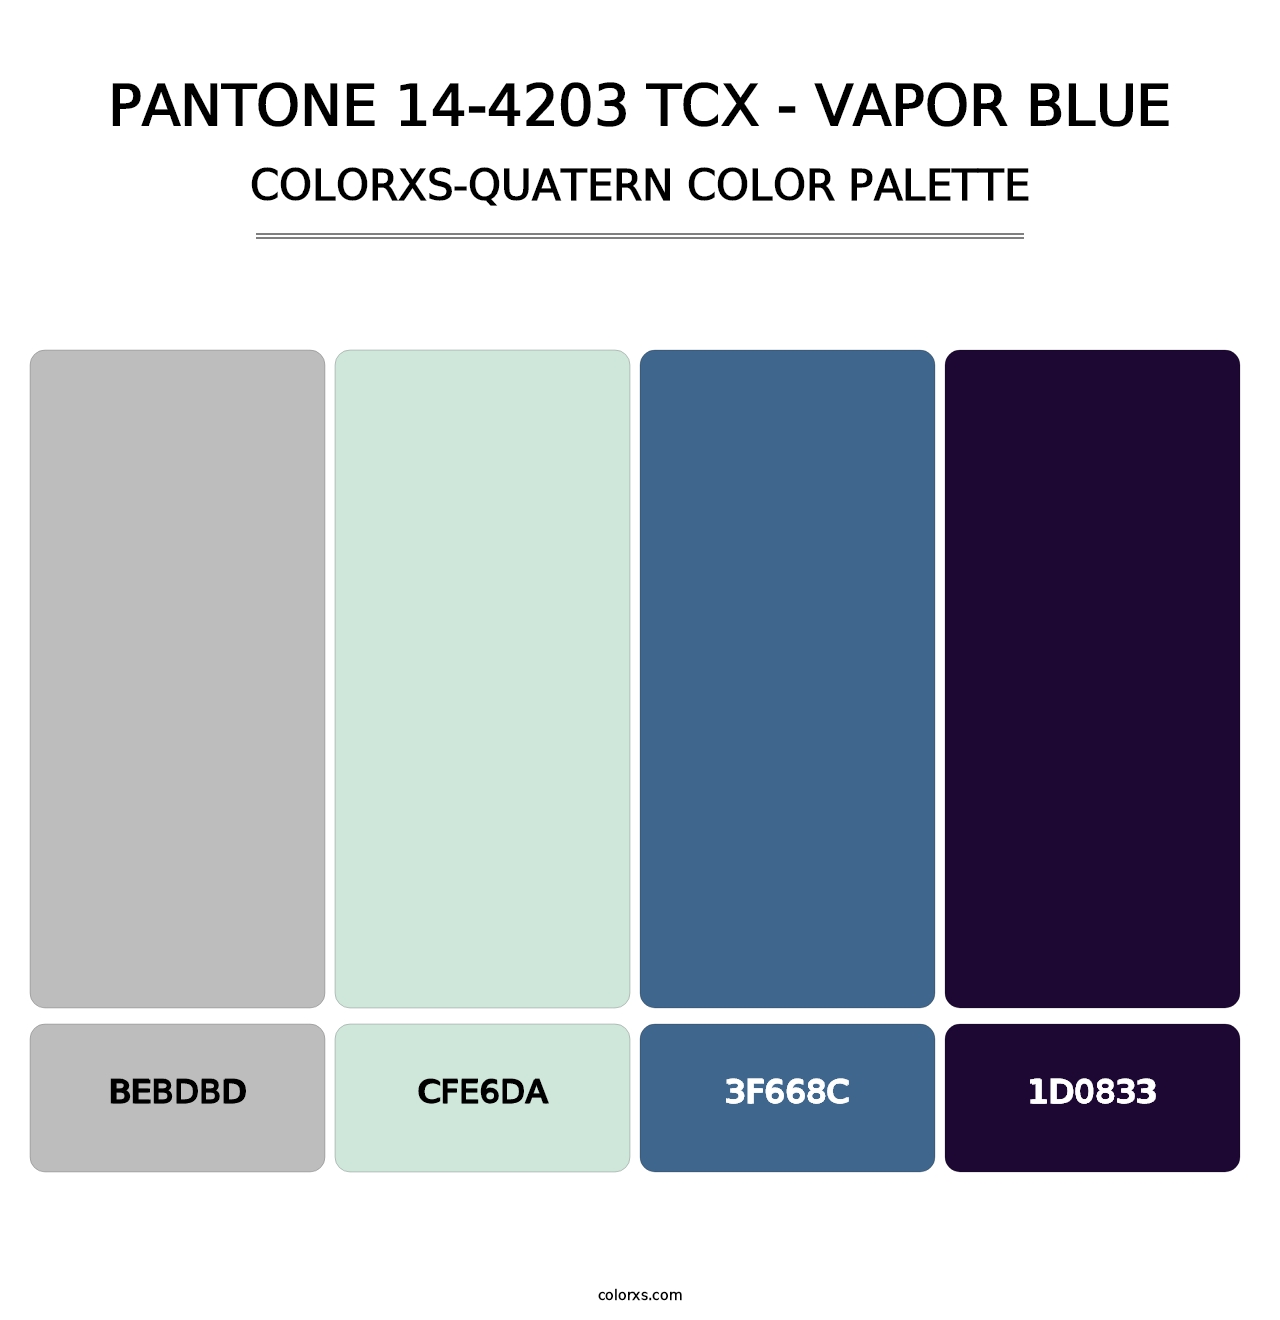 PANTONE 14-4203 TCX - Vapor Blue - Colorxs Quatern Palette